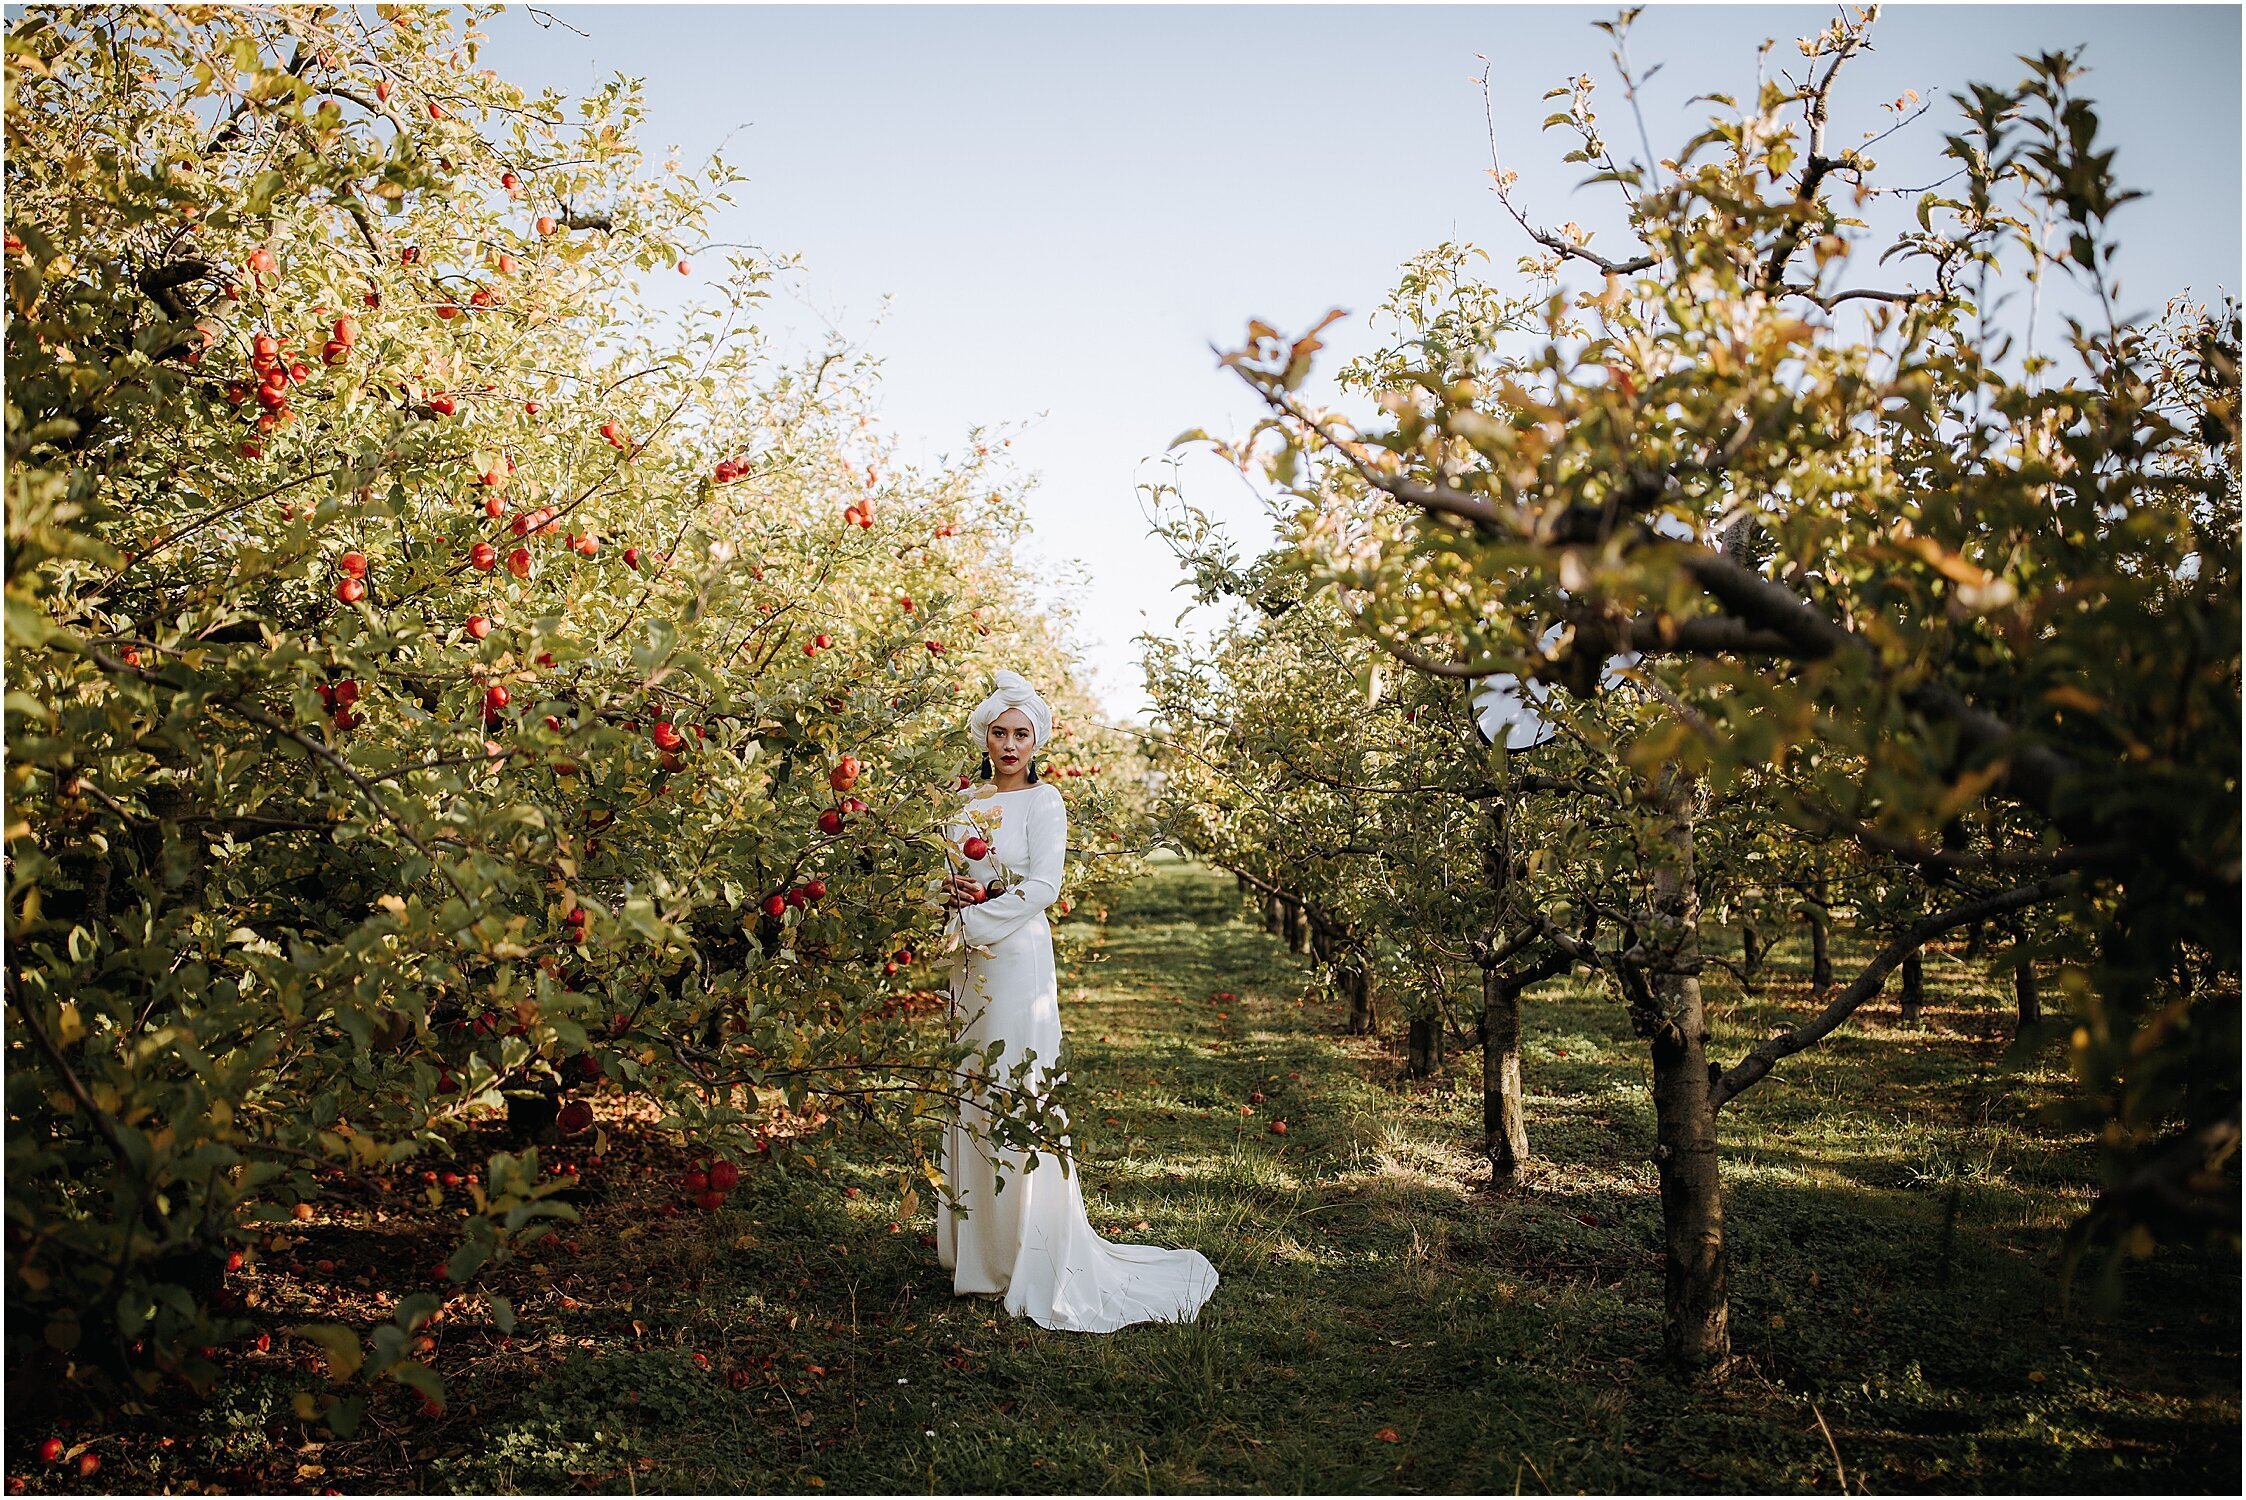 Zanda+Auckland+wedding+photographer+unique+portrait+photoshoot+ideas+autumn+winter+Windmill+apple+orchard+Coatesville+New+Zealand_5.jpeg